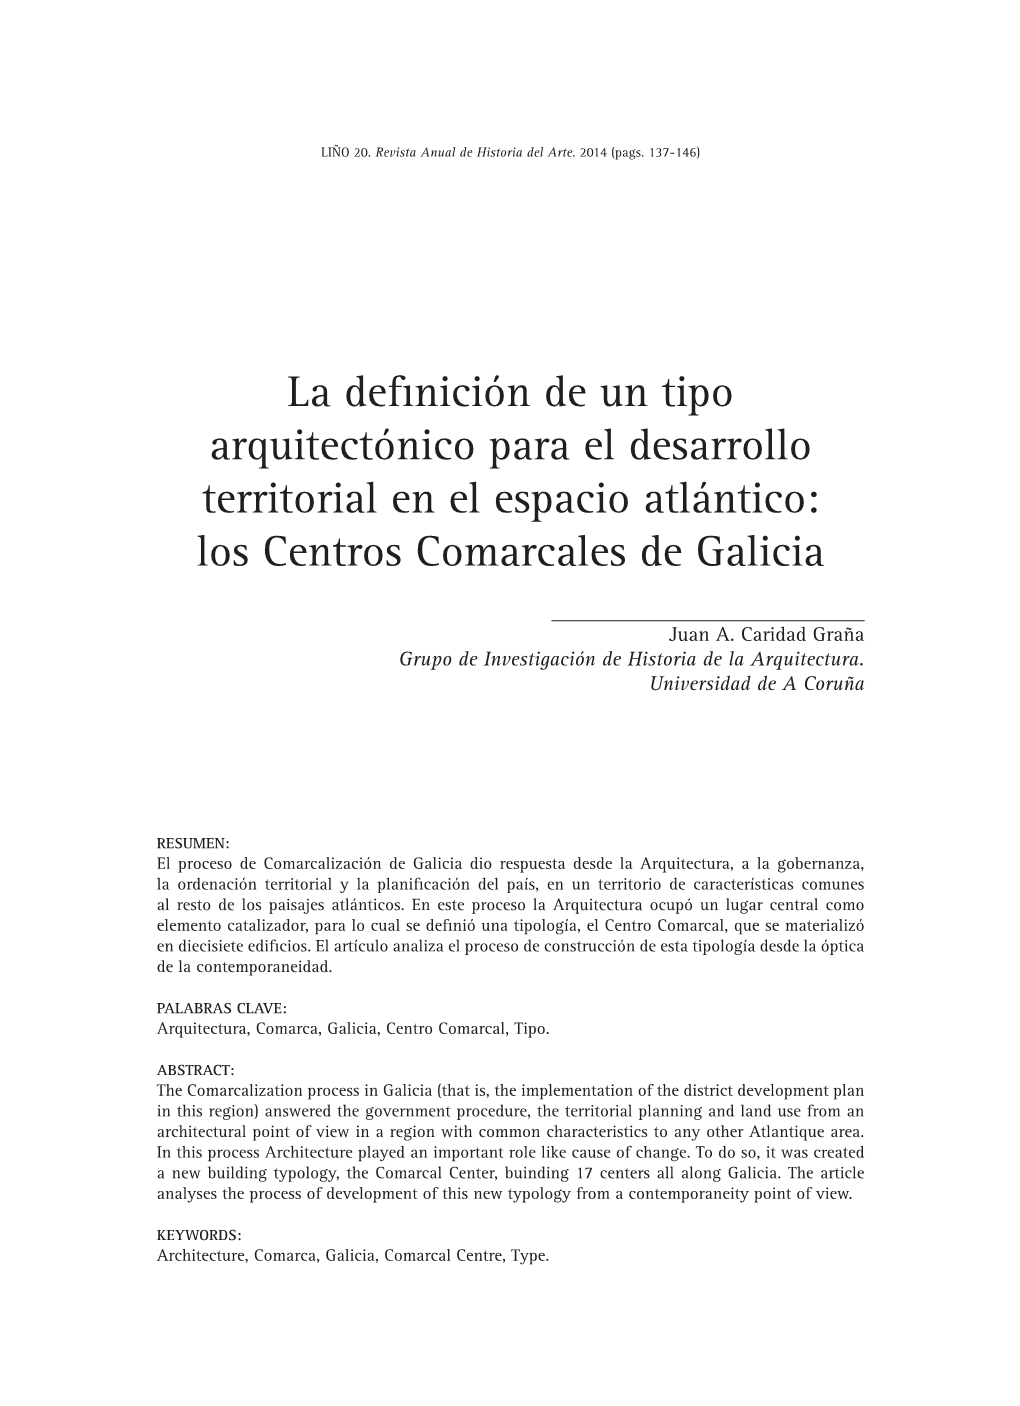 La Definición De Un Tipo Arquitectónico Para El Desarrollo Territorial En El Espacio Atlántico: Los Centros Comarcales De Galicia